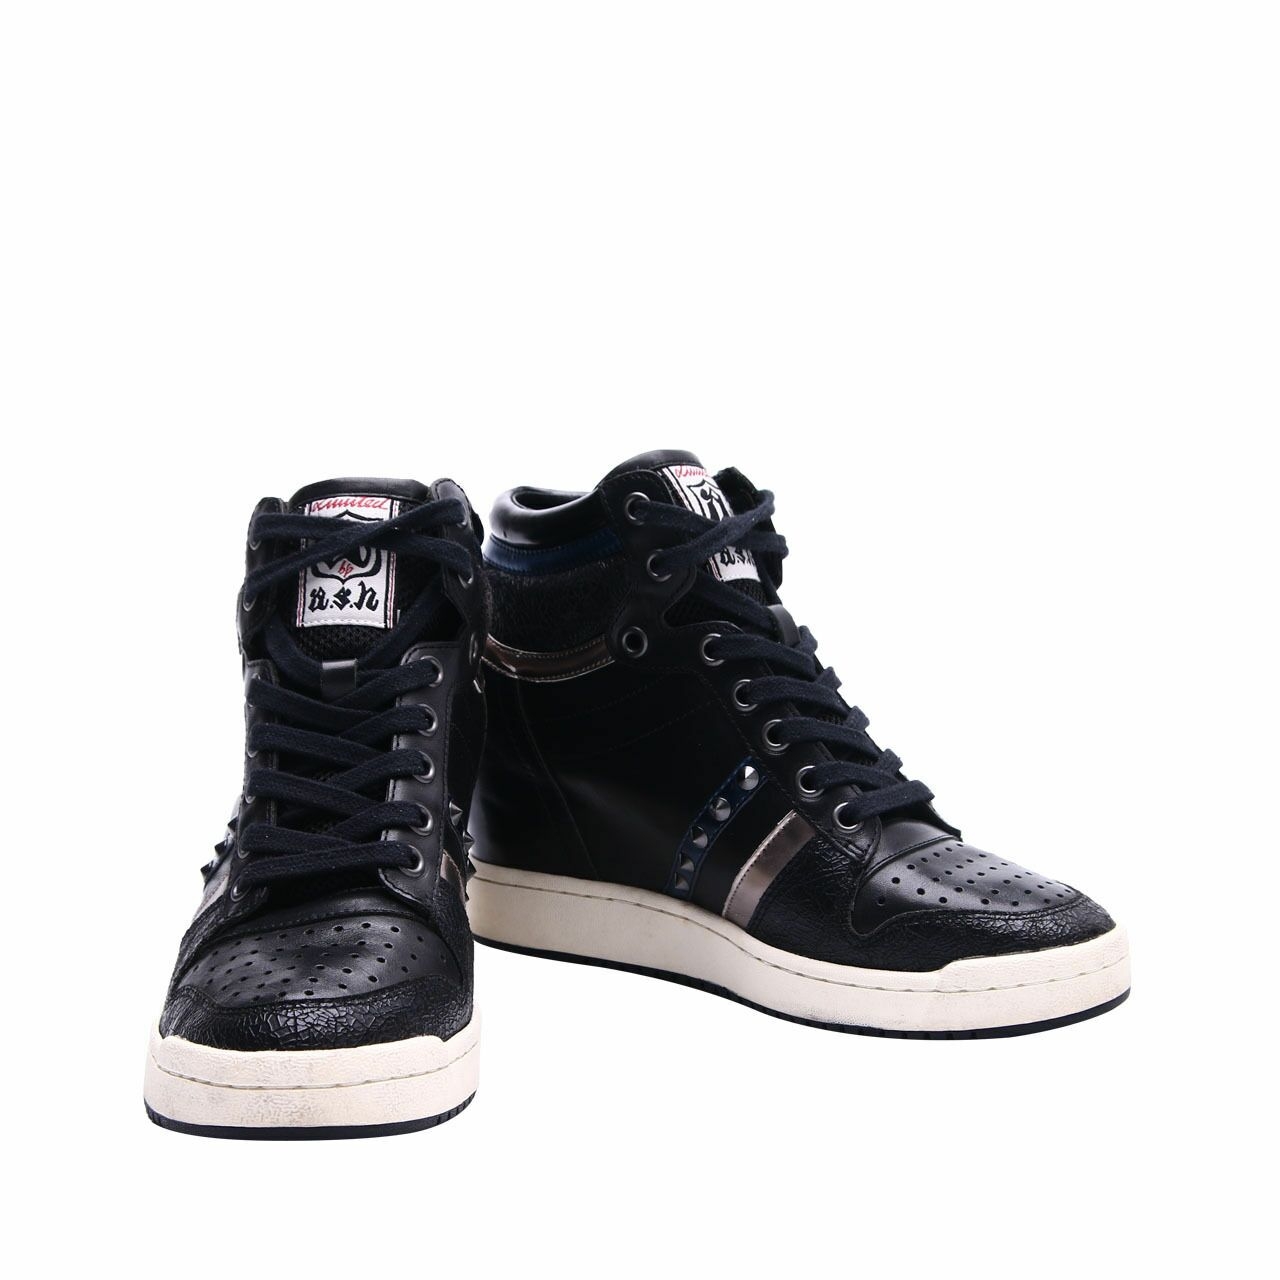 ASH Black Wedges Sneakers